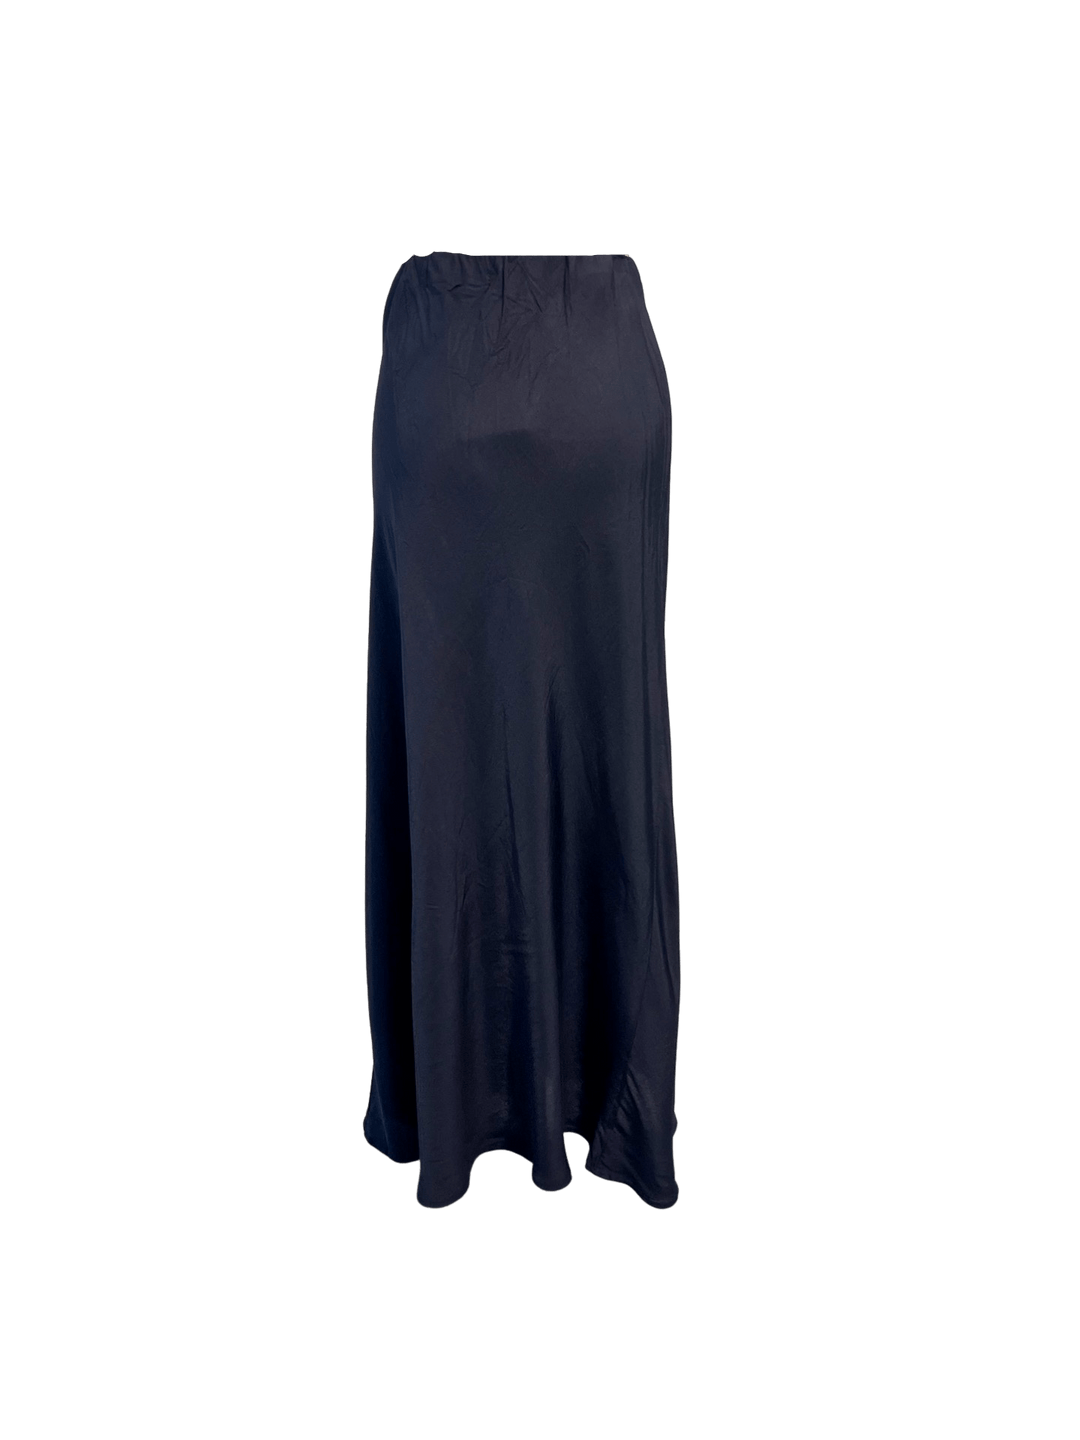 Sateside Apparel Stateside | Viscose Satin Midi Skirt in Navy